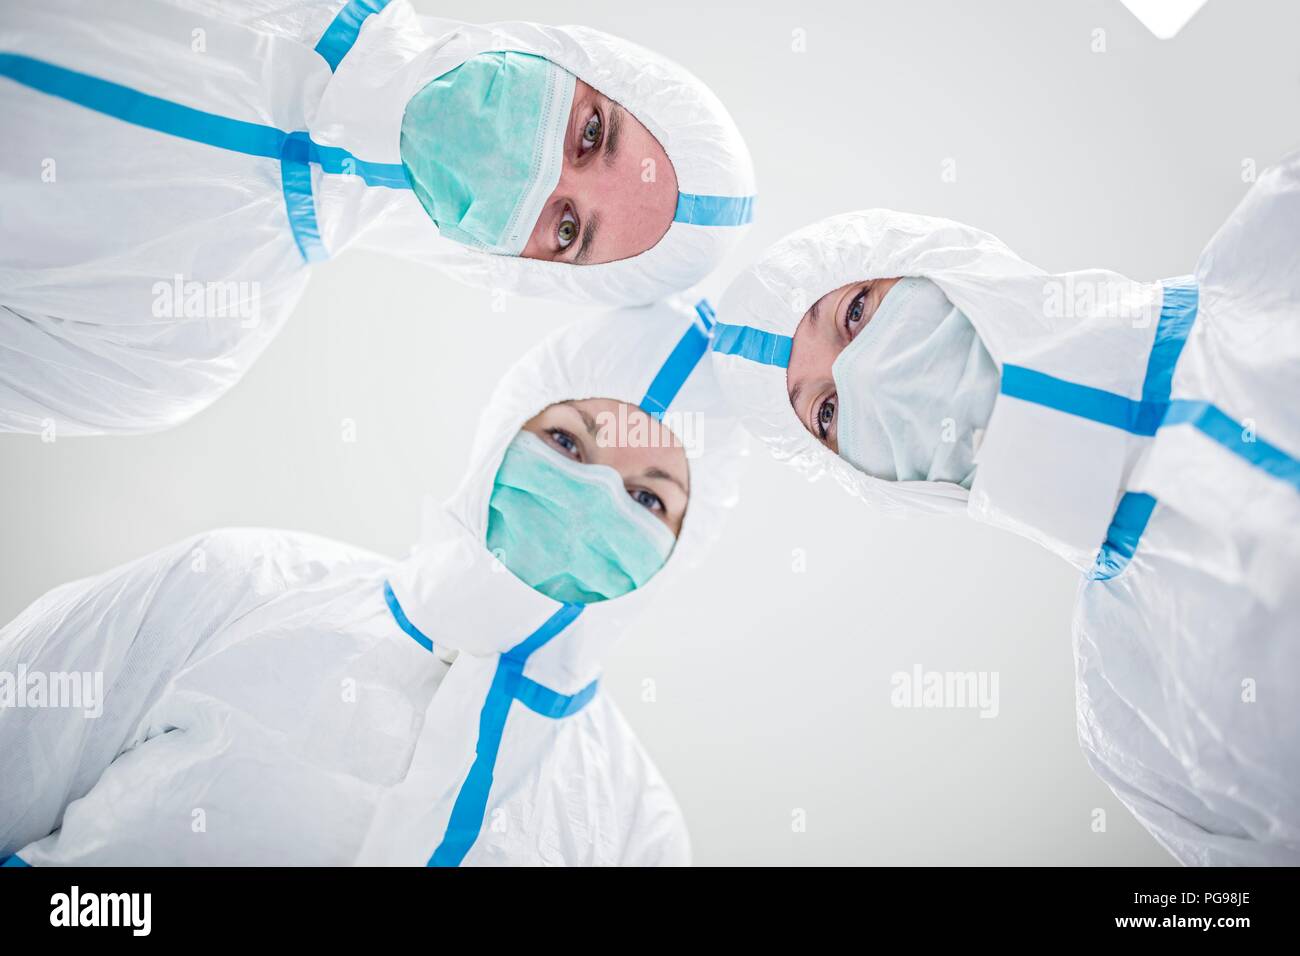 Los técnicos de laboratorio el uso de trajes de protección y máscaras para la cara en un laboratorio que debe mantener un ambiente estéril. Foto de stock